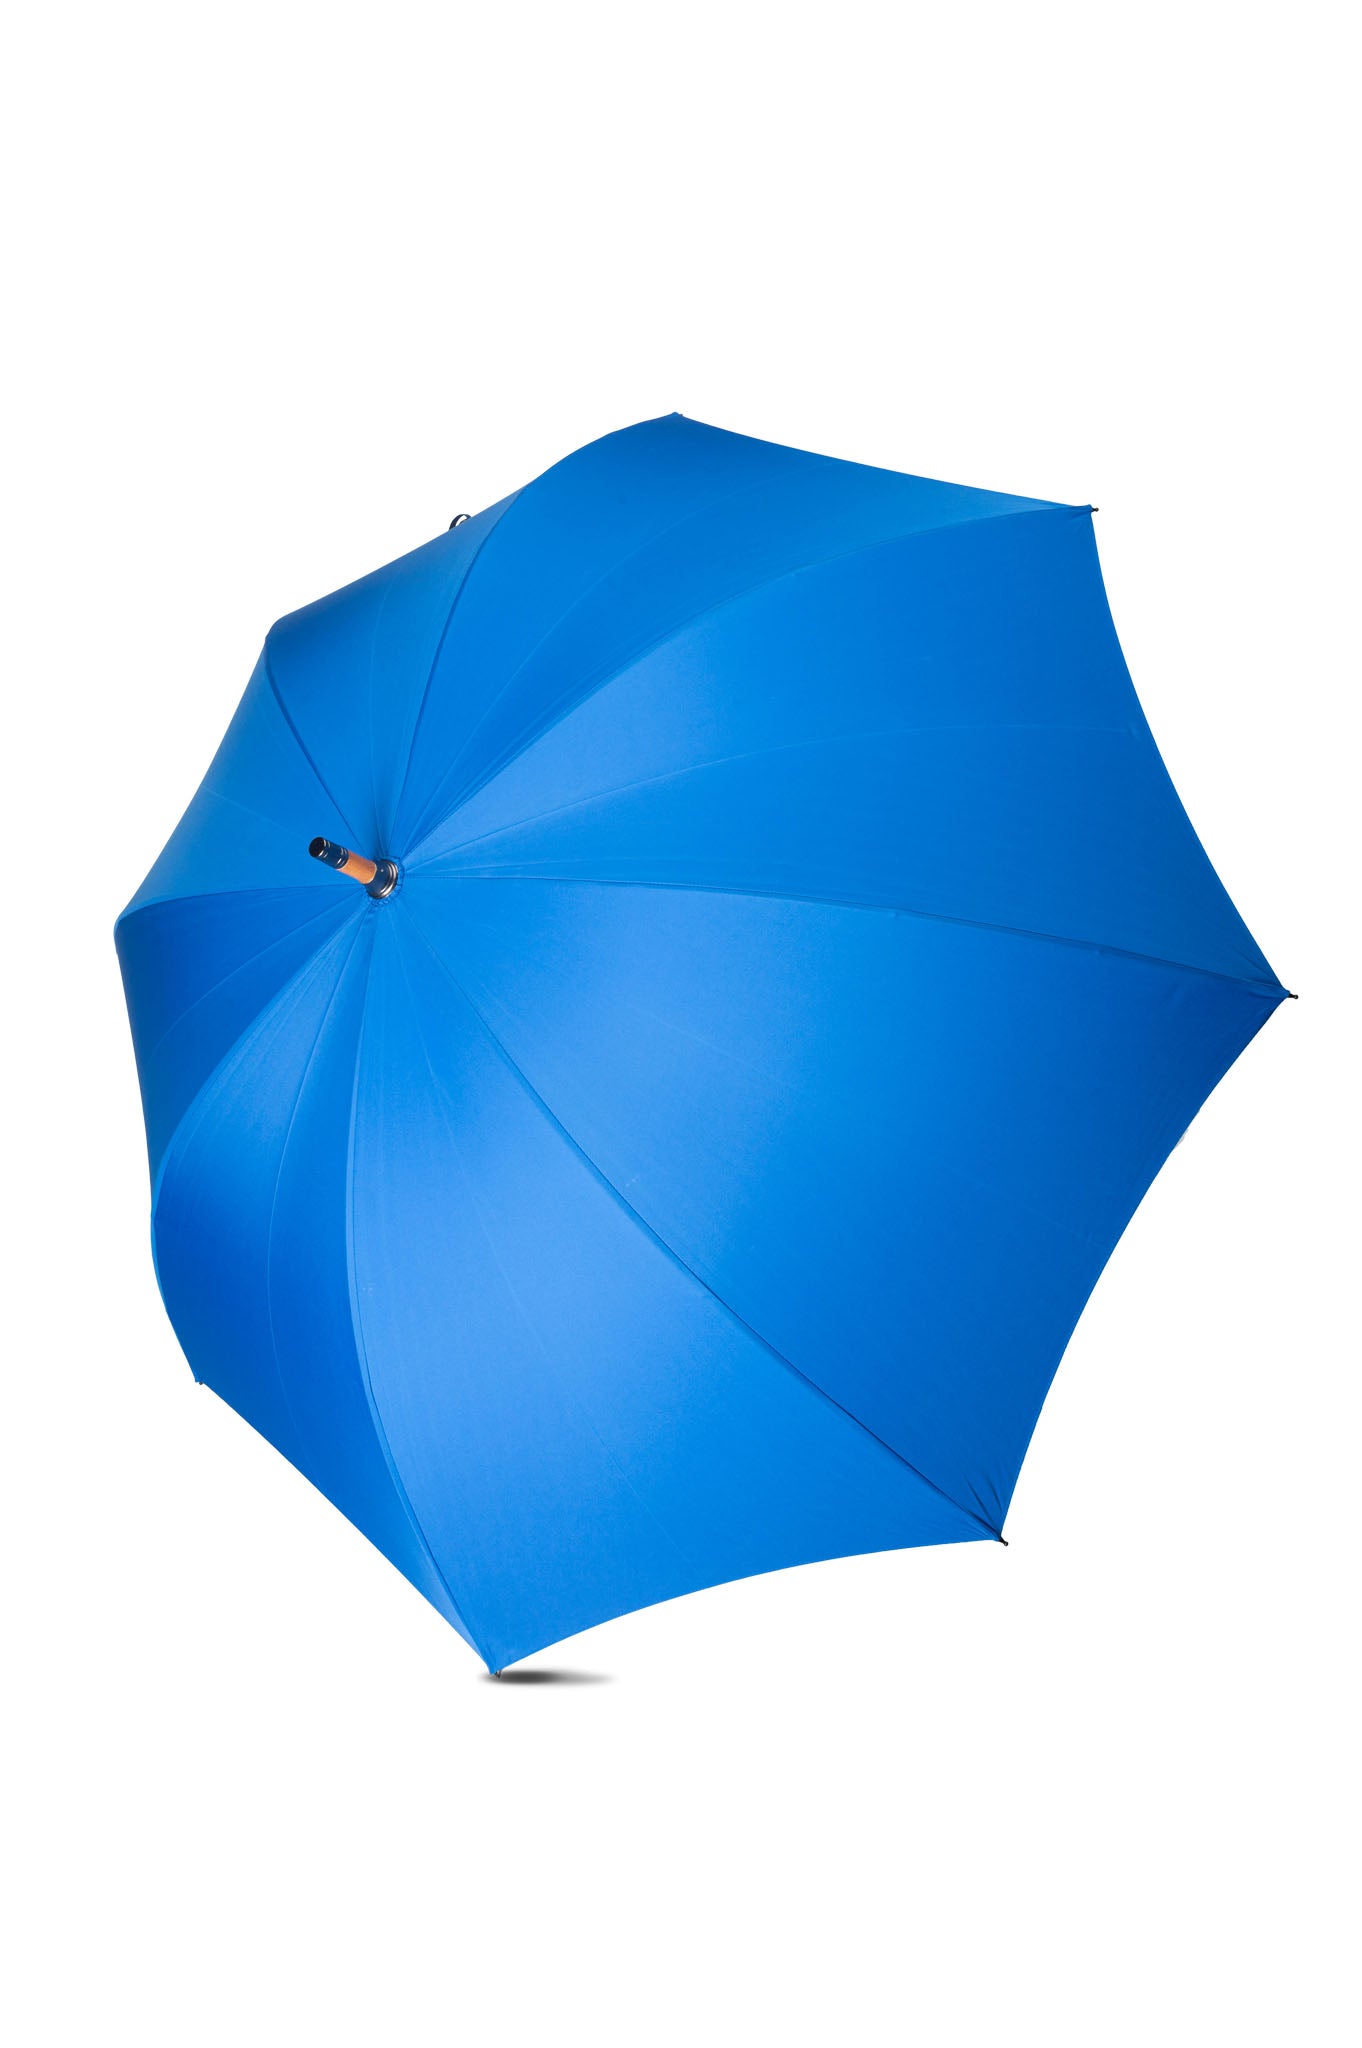 Polo Mallet Umbrella Royal Blue